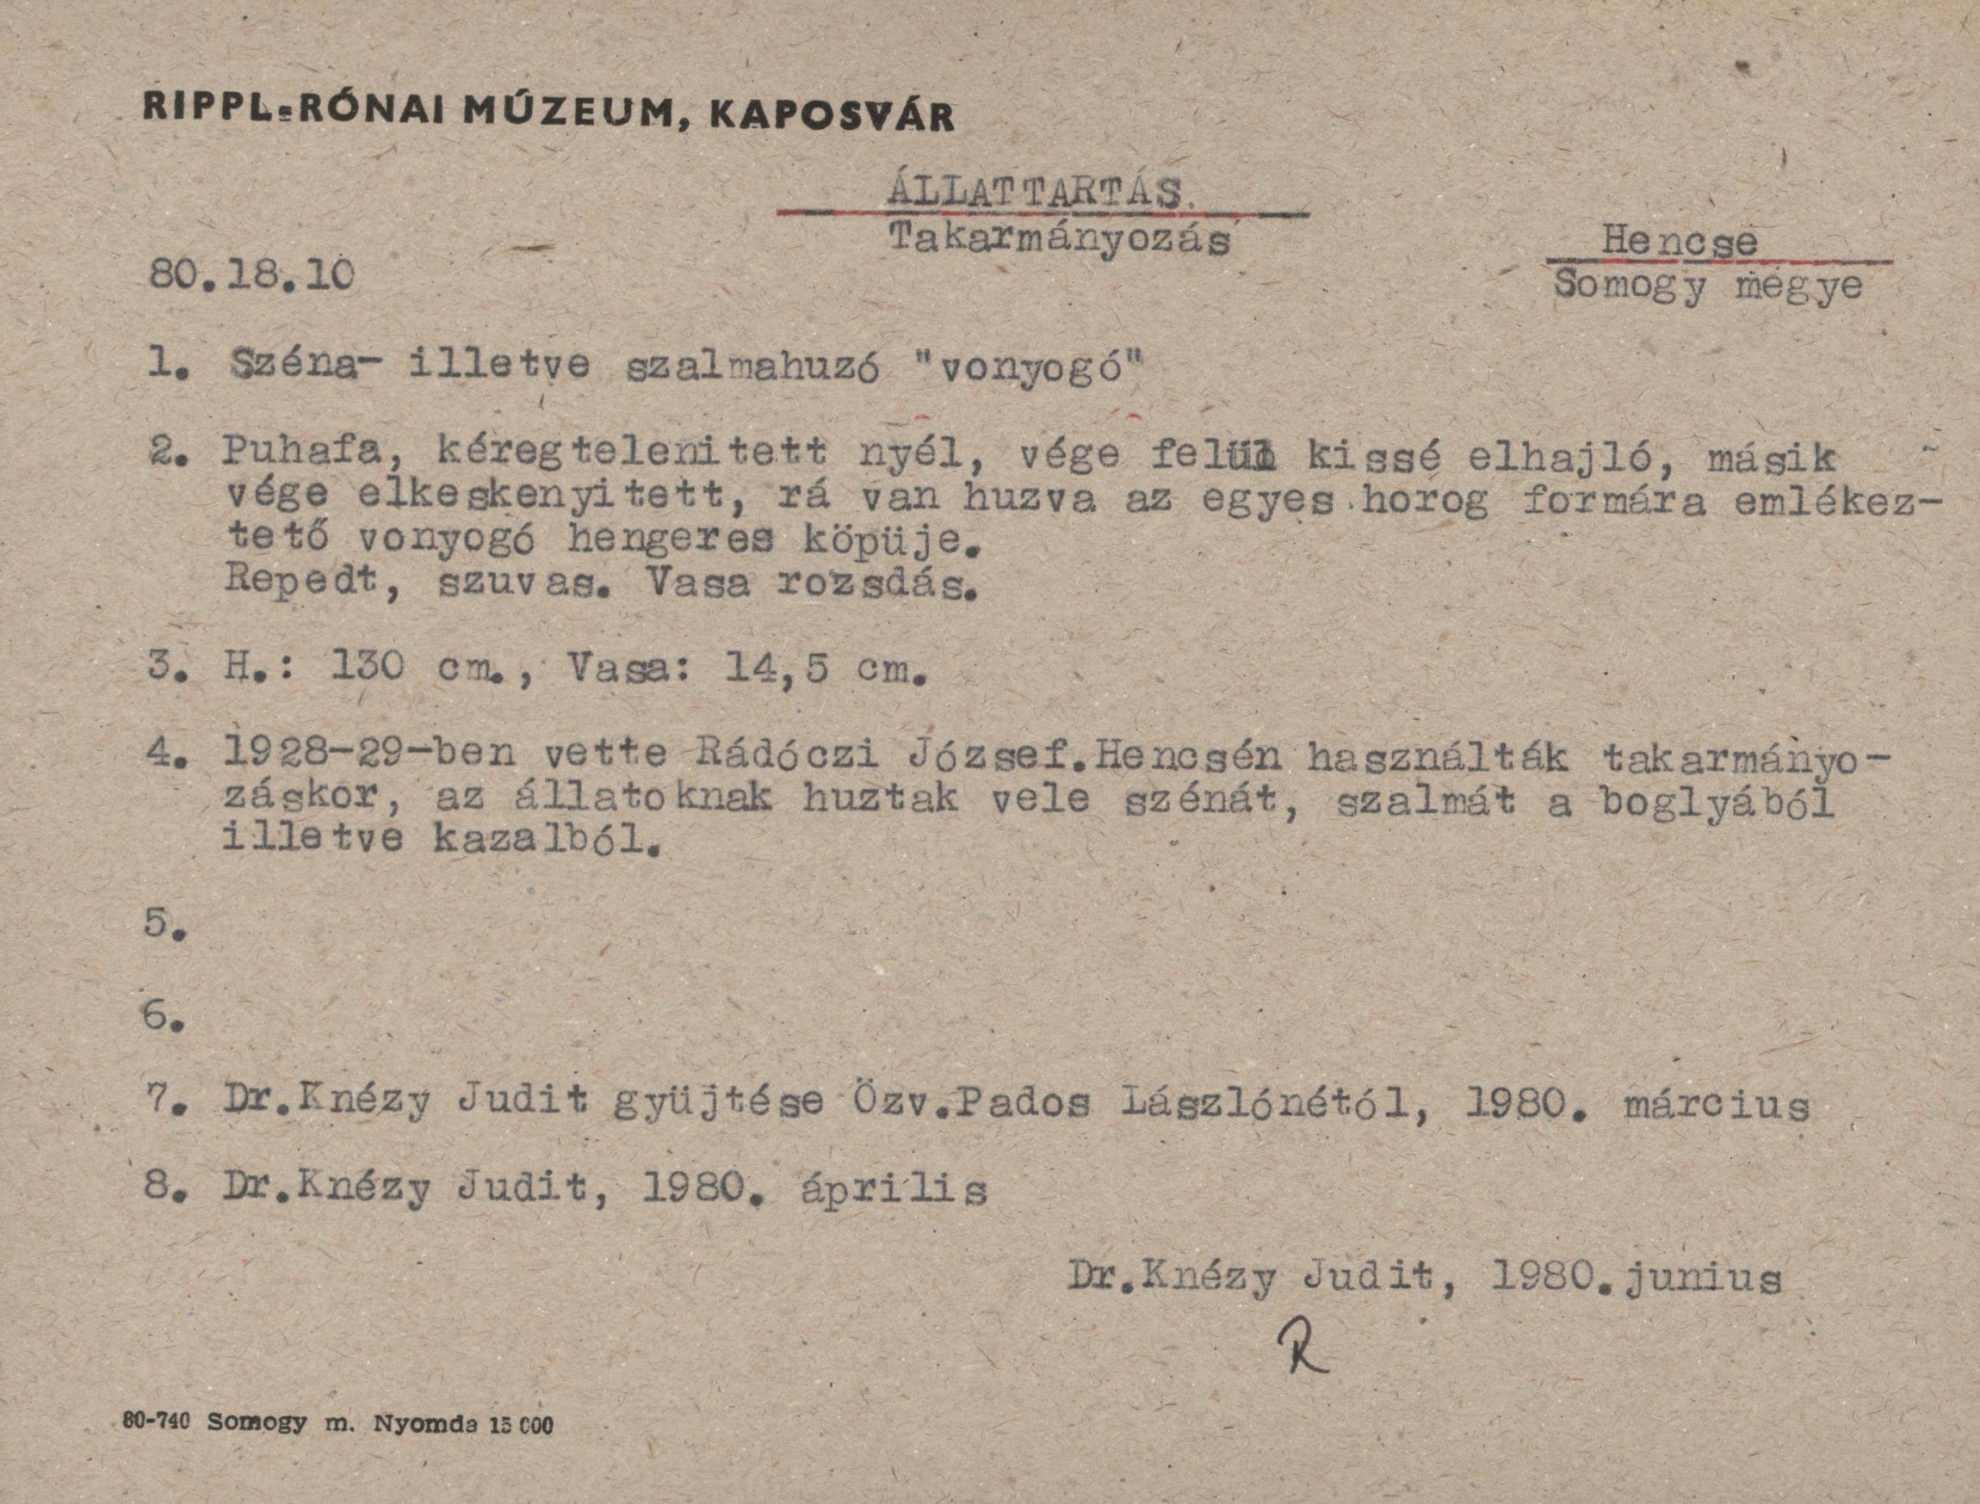 Széna ill. szalmahúzó "vonyogó" (Rippl-Rónai Múzeum CC BY-NC-SA)